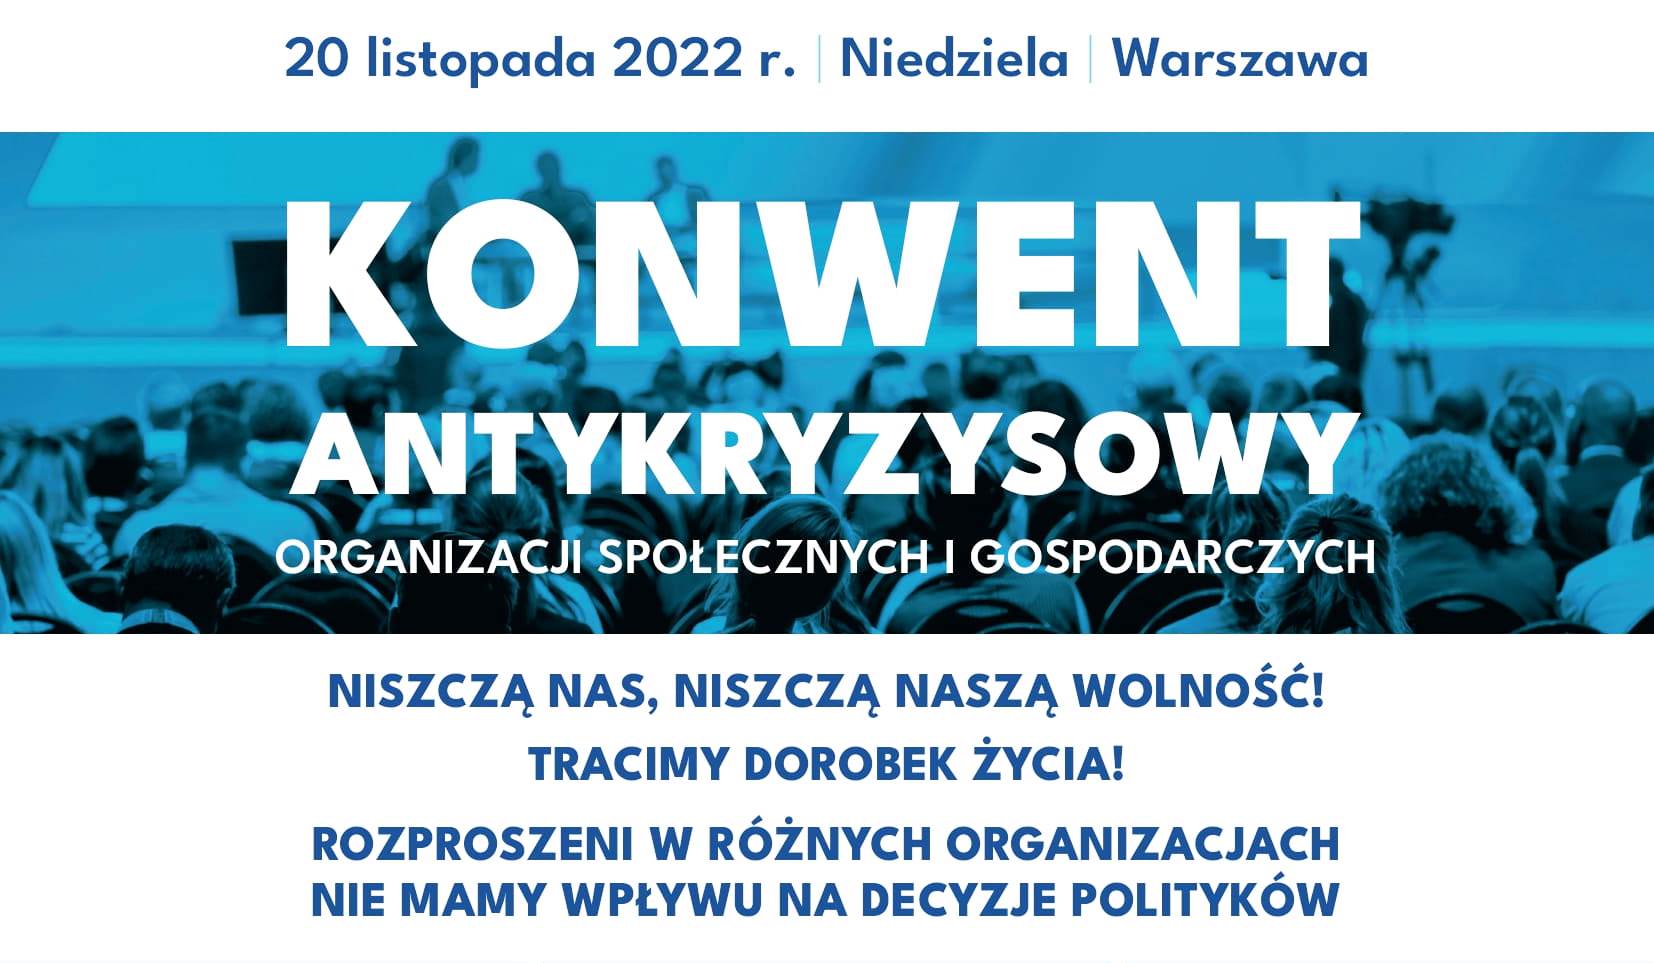 Przedsiębiorcy wszystkich okręgów wyborczych łączcie się ! Weź udział w Konwencie Antykryzysowym 20 listopada w Warszawie.